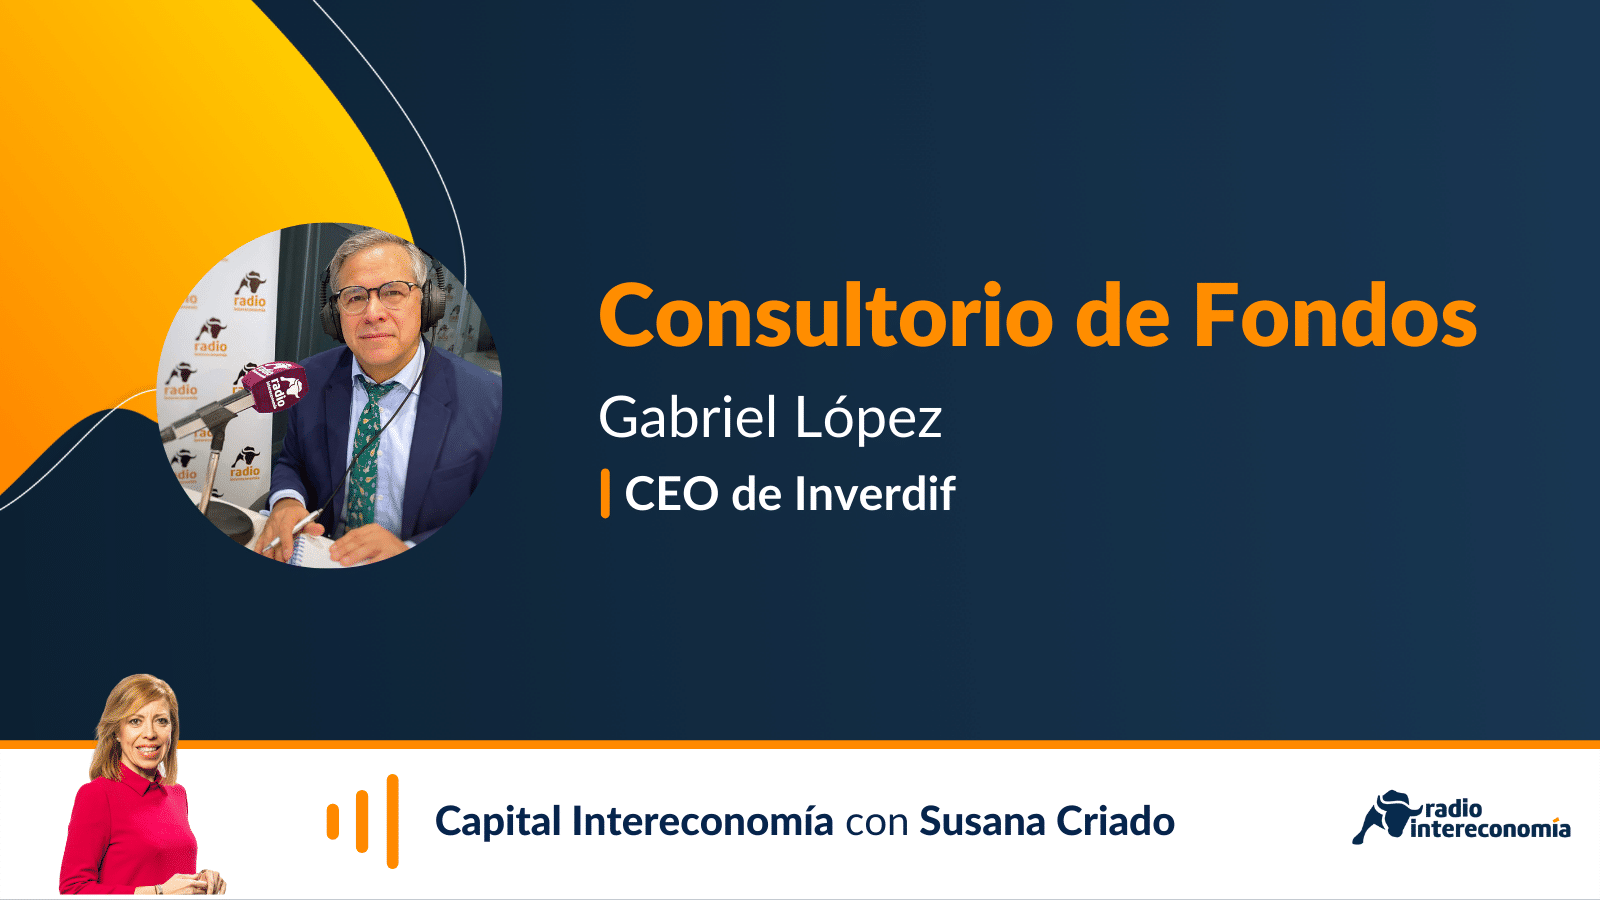 Consultorio de fondos con Gabriel López: En momentos de volatilidad, ¿es conveniente ir descargando bolsa de las carteras para reducir riesgo?